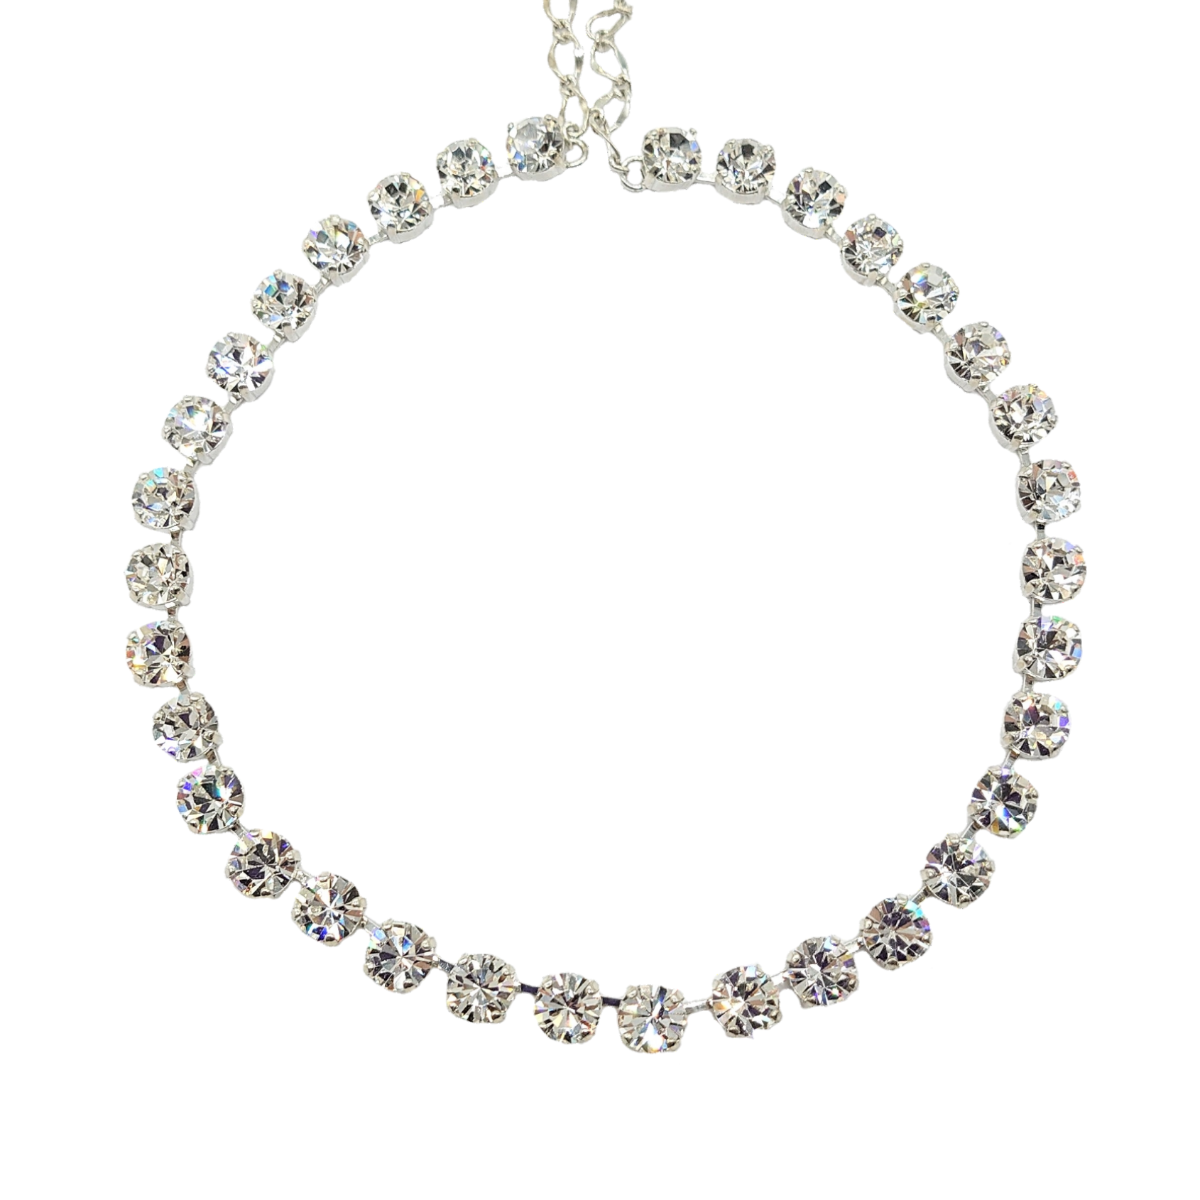 Single Row Crystal Necklace - Swarovski Crystals